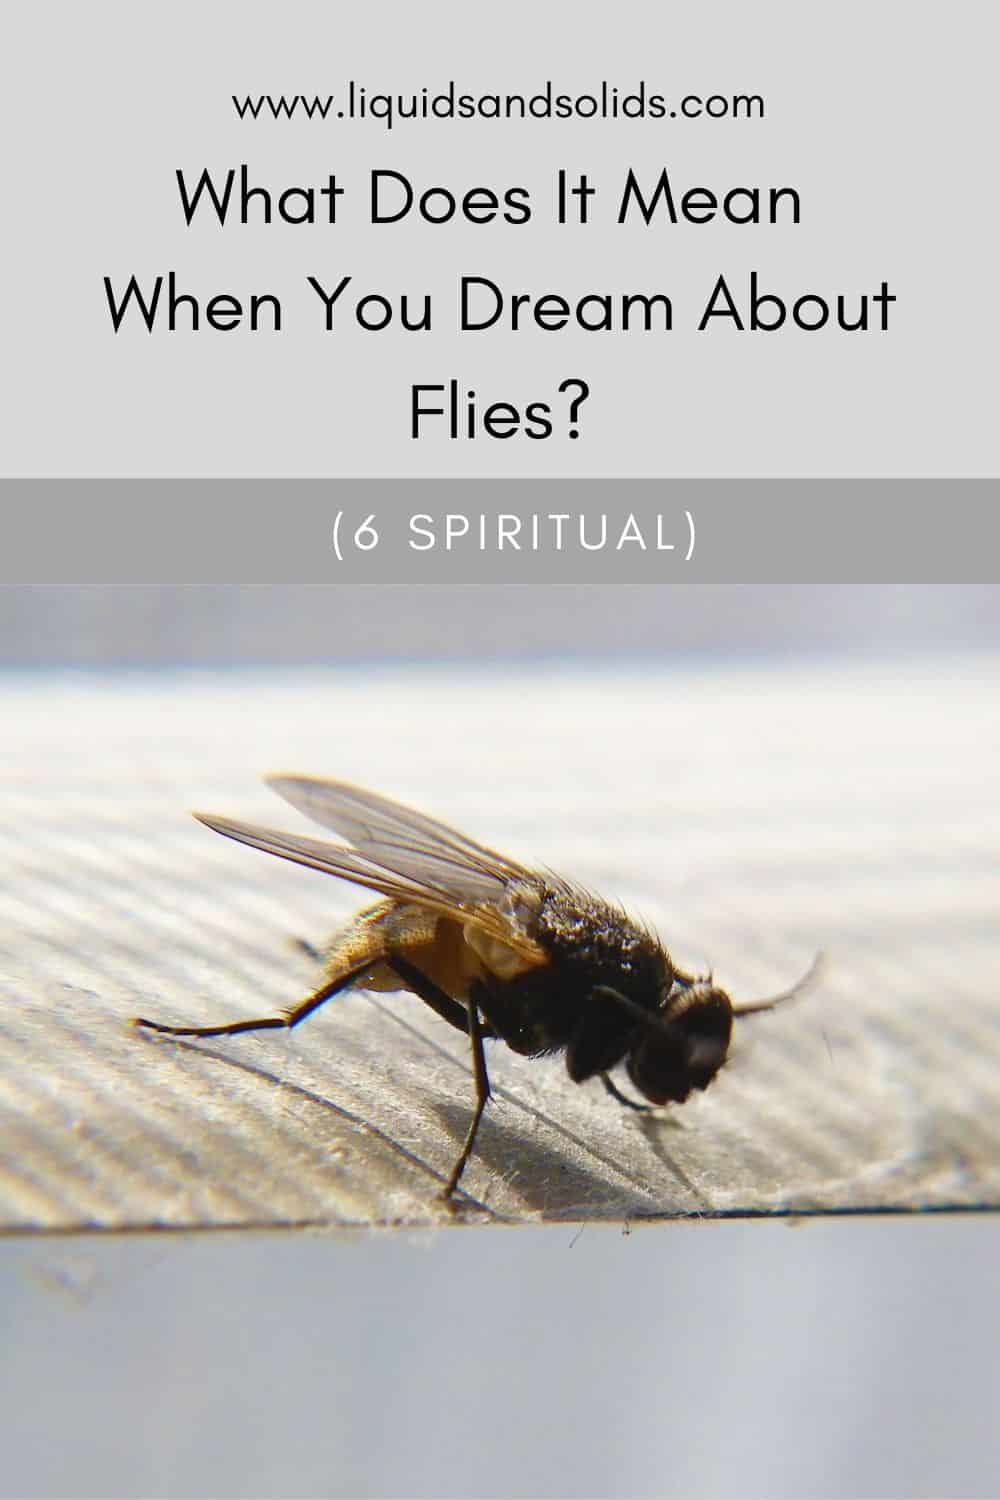  Ce que signifie rêver de mouches (6 significations spirituelles)